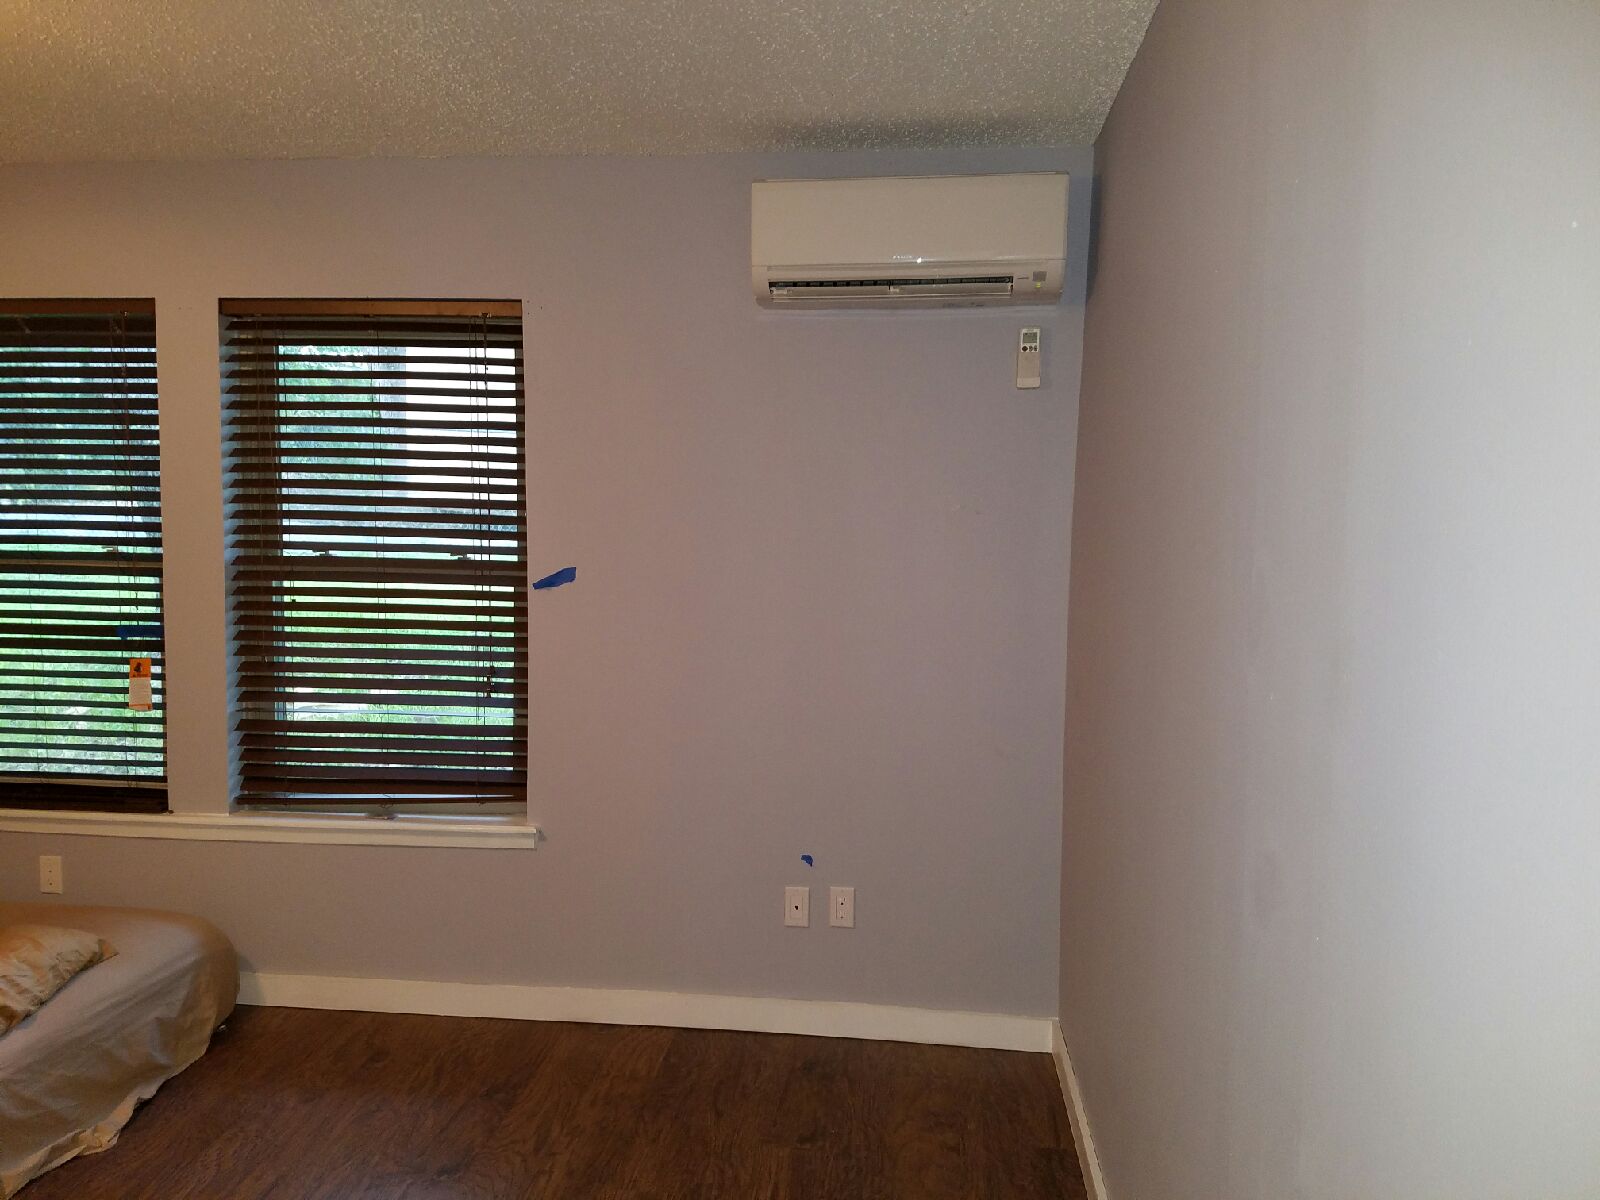 Interior home ductless mini split air conditioner